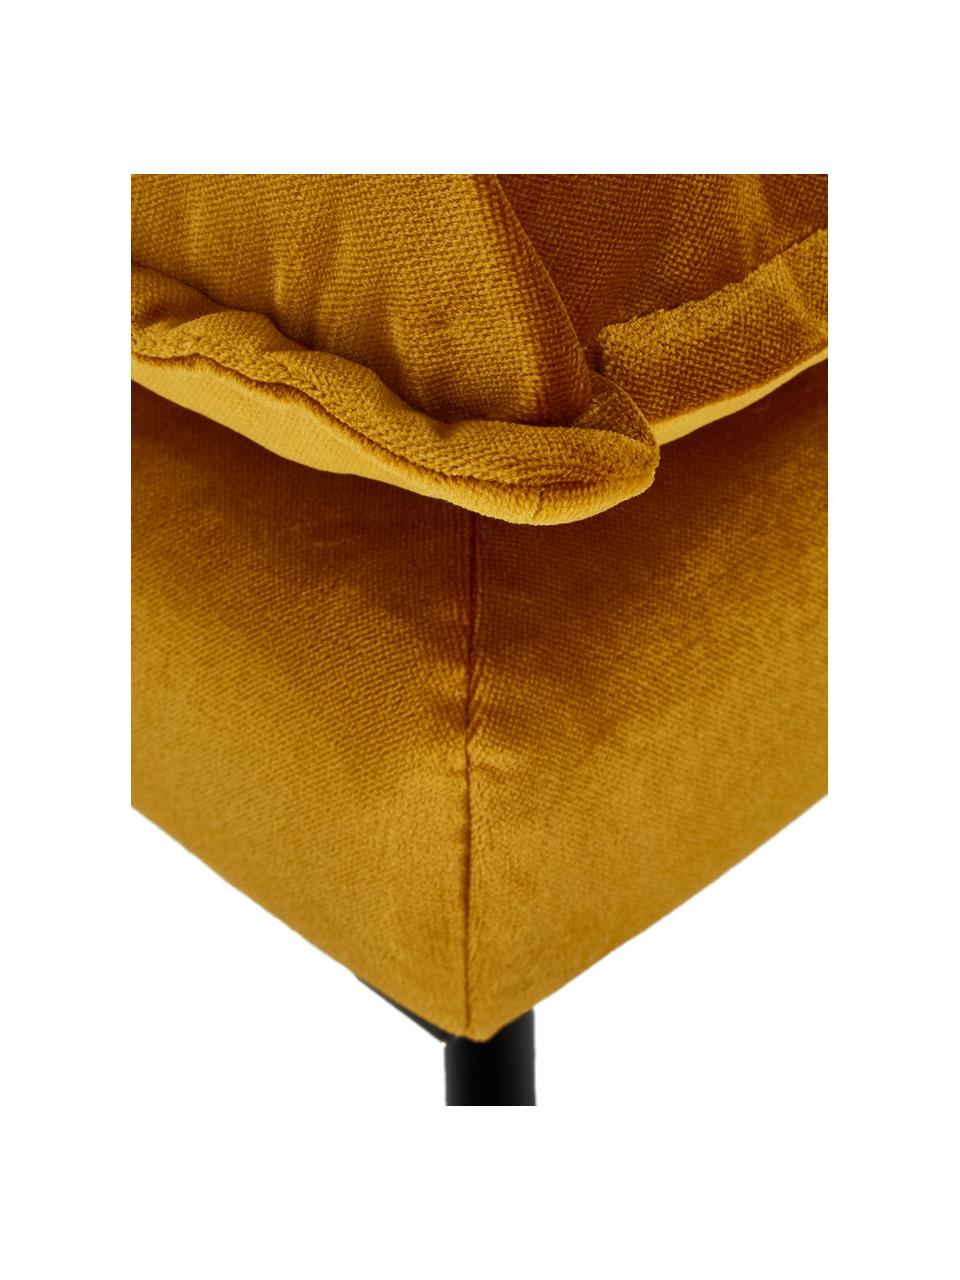 Fluwelen bank Retro (2-zits) in geel met metalen poten, Bekleding: polyester fluweel, Frame: MDF, houtvezelplaat, Poten: gepoedercoat metaal, Fluweel okergeel, B 175 x D 83 cm